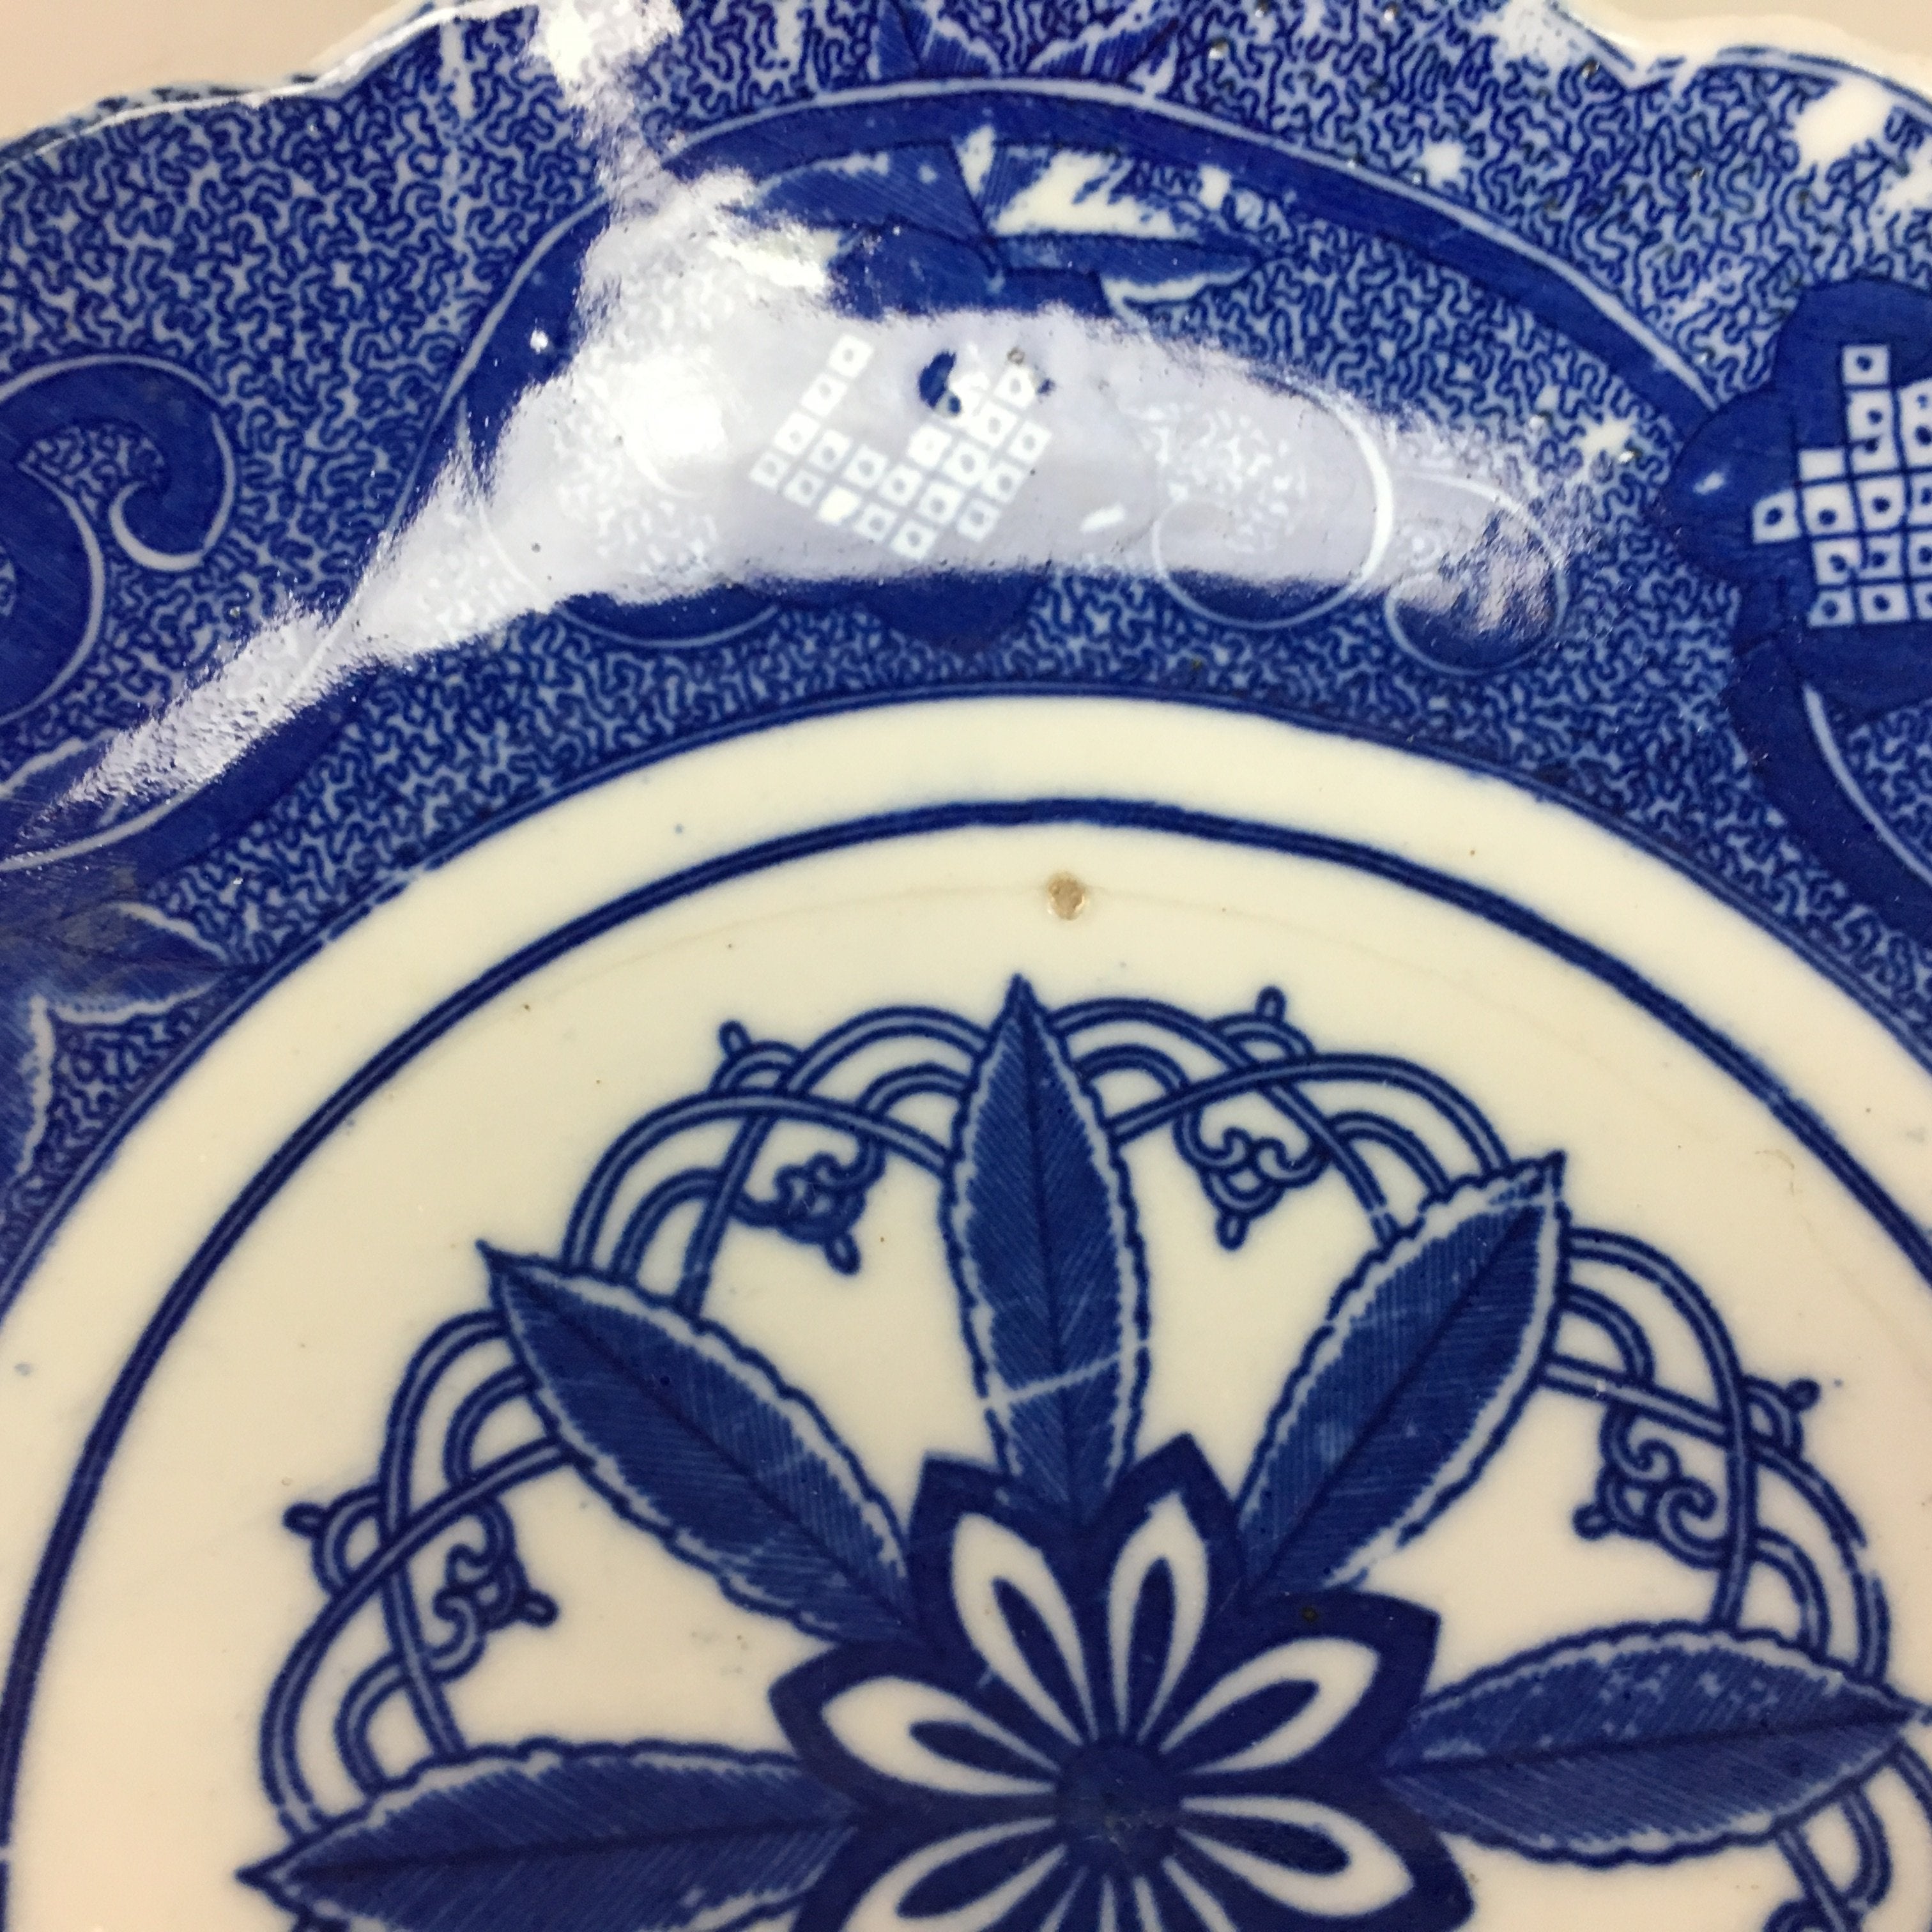 Japanese Sometsuke Porcelain Plate Vtg Floral Flower Vine Leaf Blue White PT505